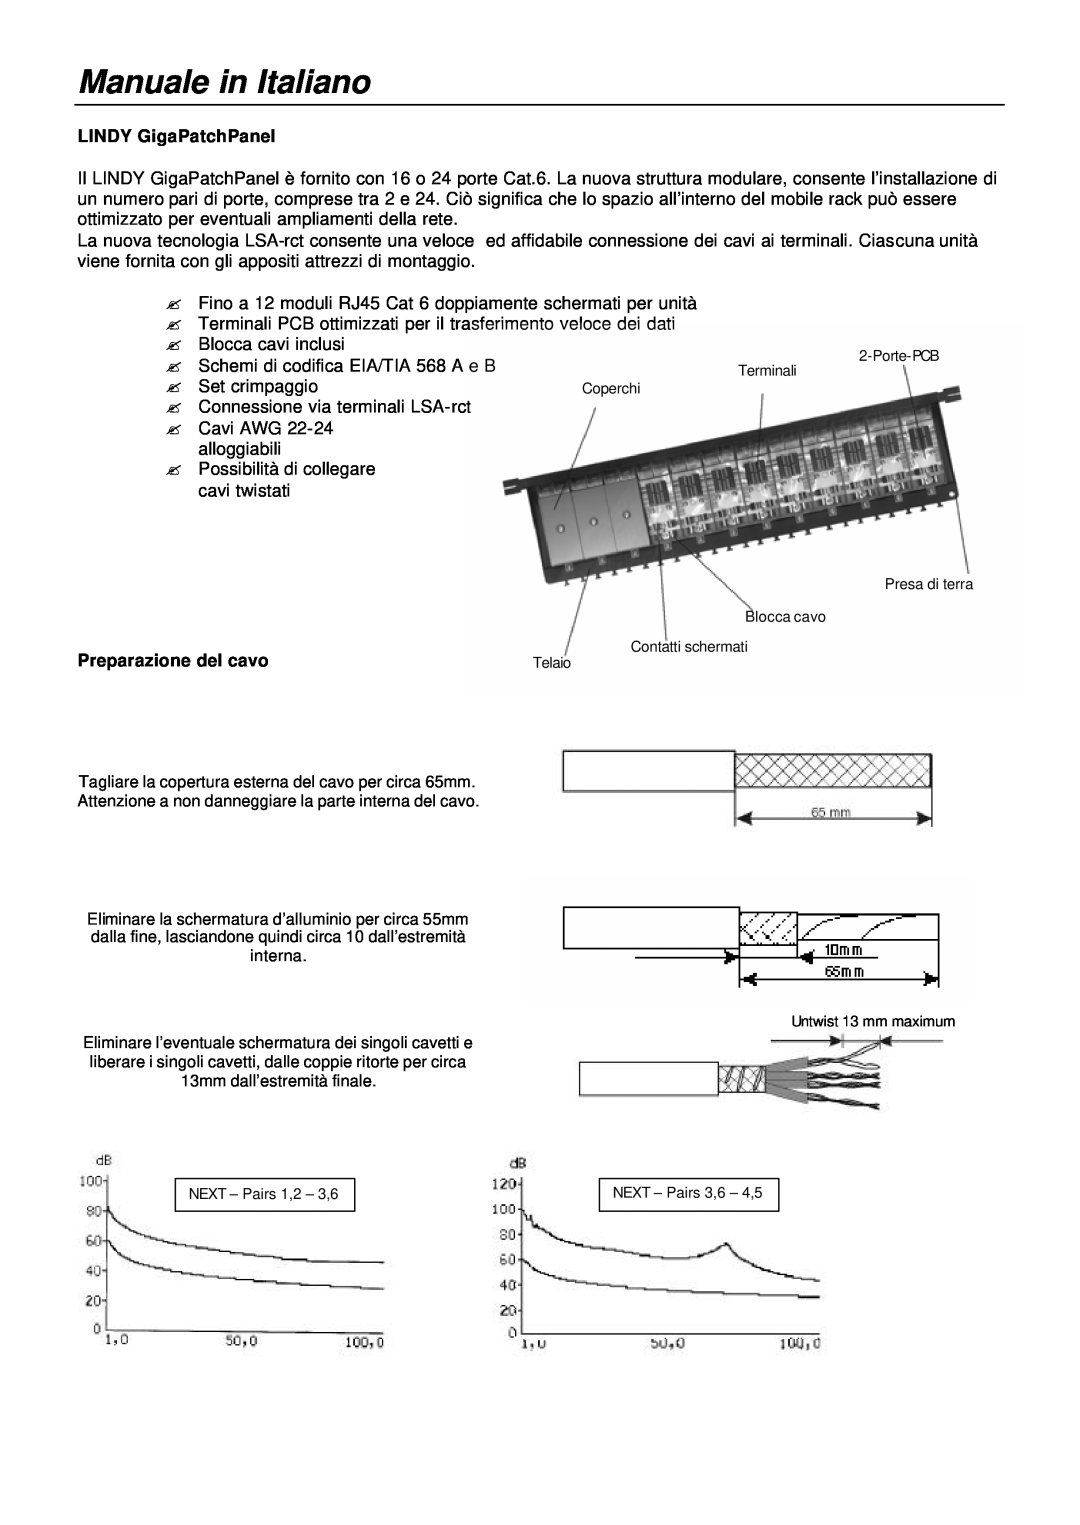 Lindy 20704, 20703 manual Manuale in Italiano, LINDY GigaPatchPanel, Preparazione del cavo 